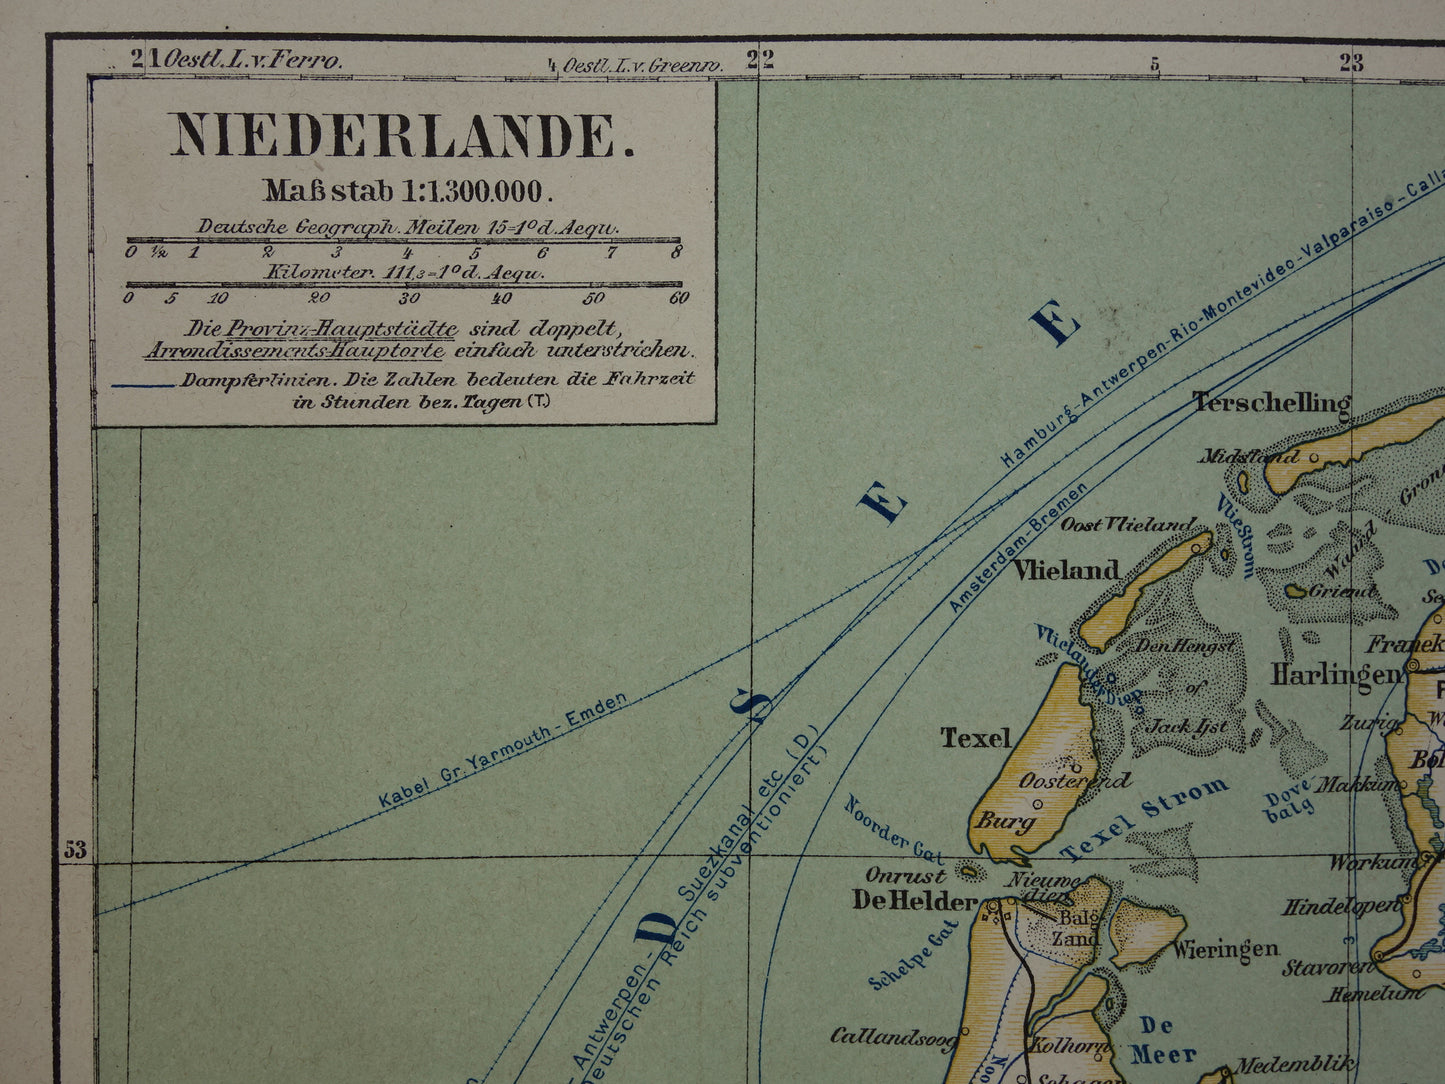 NEDERLAND oude landkaart van Nederland uit 1893 originele antieke historische kaart NL